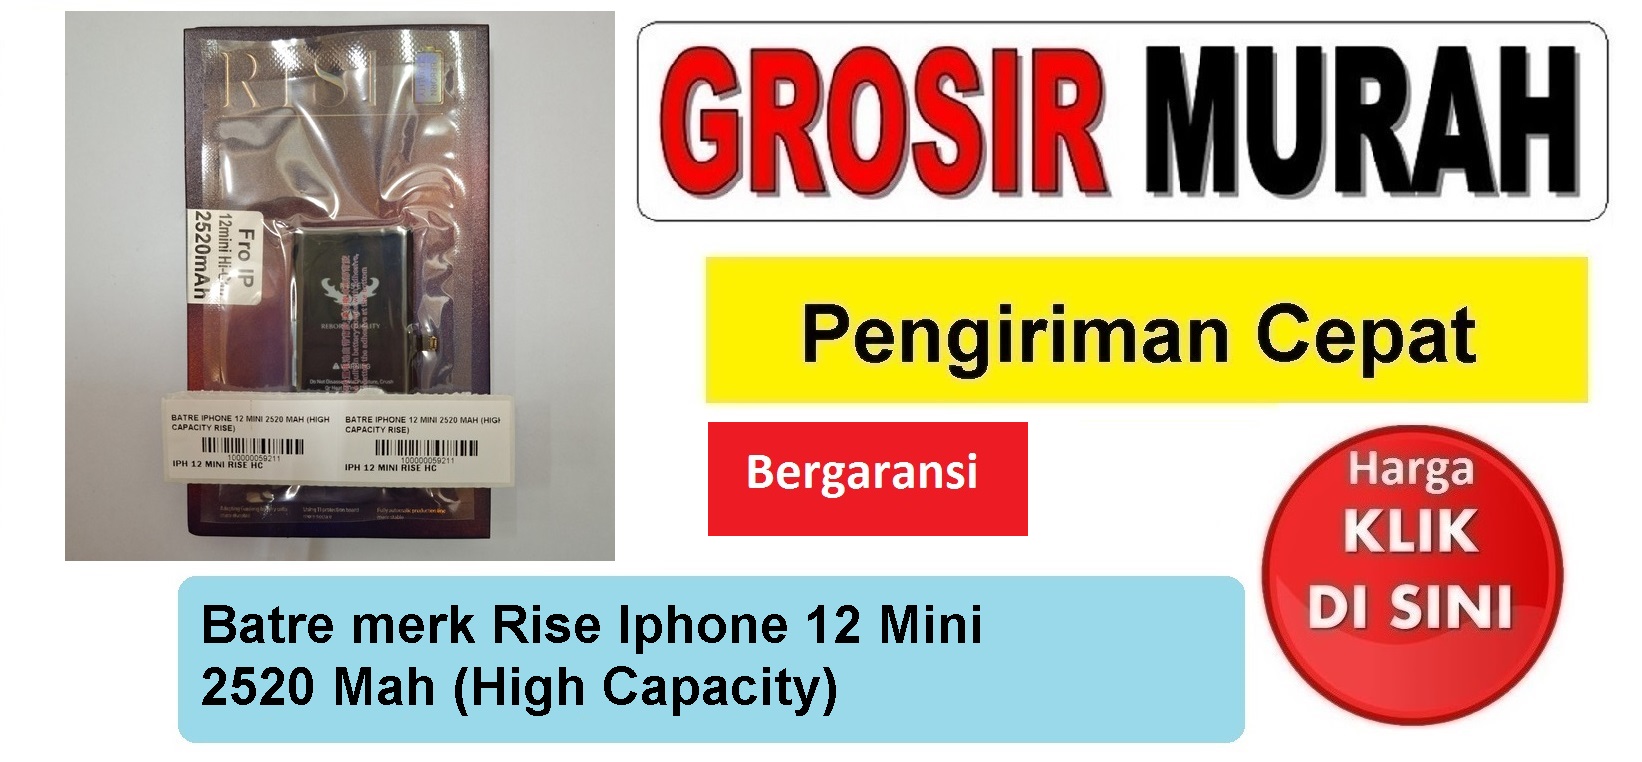 Batre merk Rise Iphone 12 Mini 2520 Mah (High Capacity) Baterai Battery Bergaransi Batere